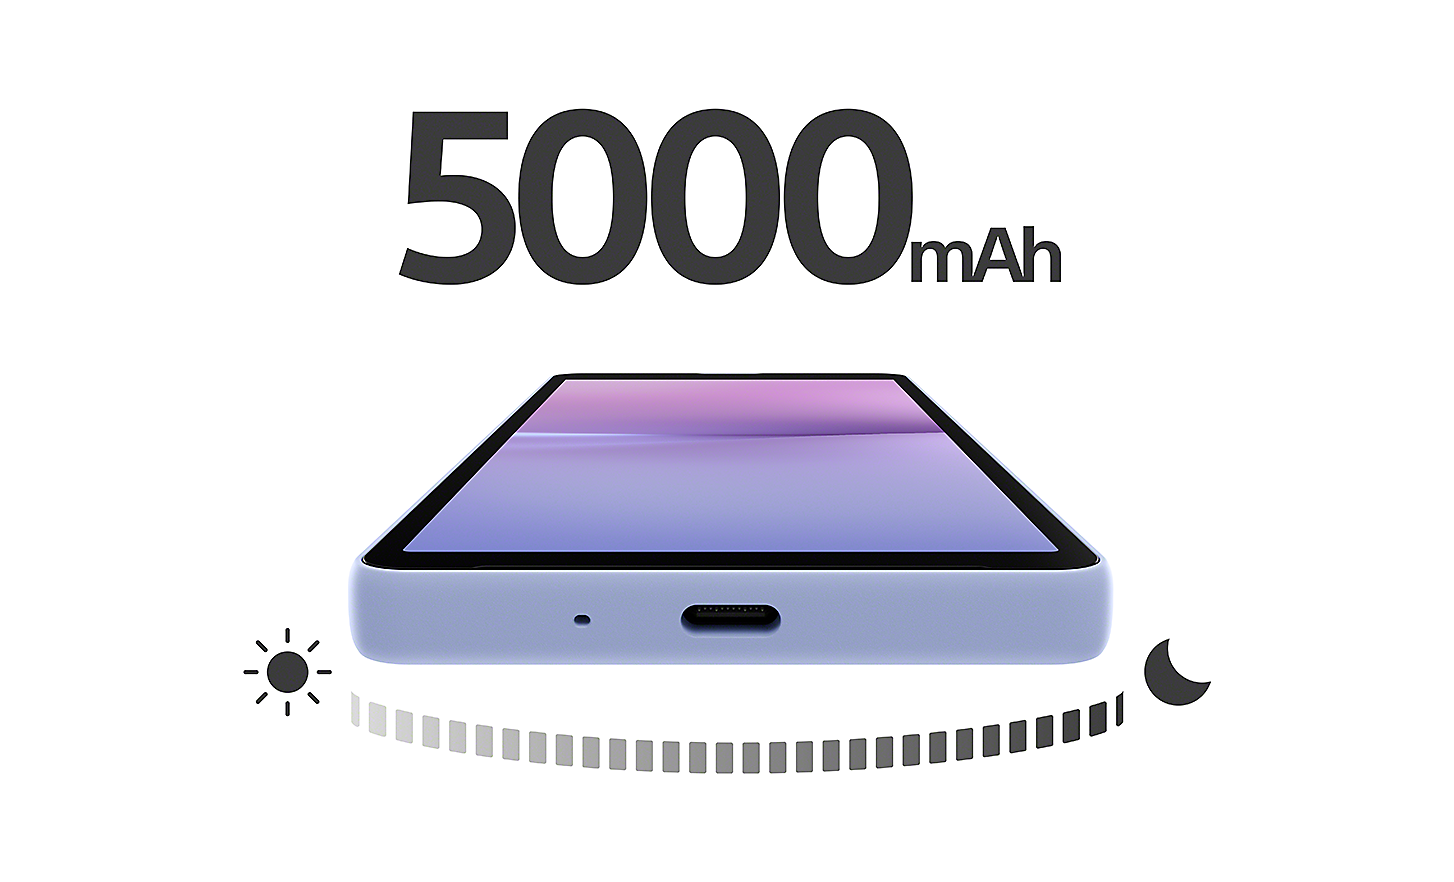 平放的薰衣草紫 Xperia 10 V。手機上方有大大的「5000 mAh」字樣。手機下方有從白天到黑夜的圖示。